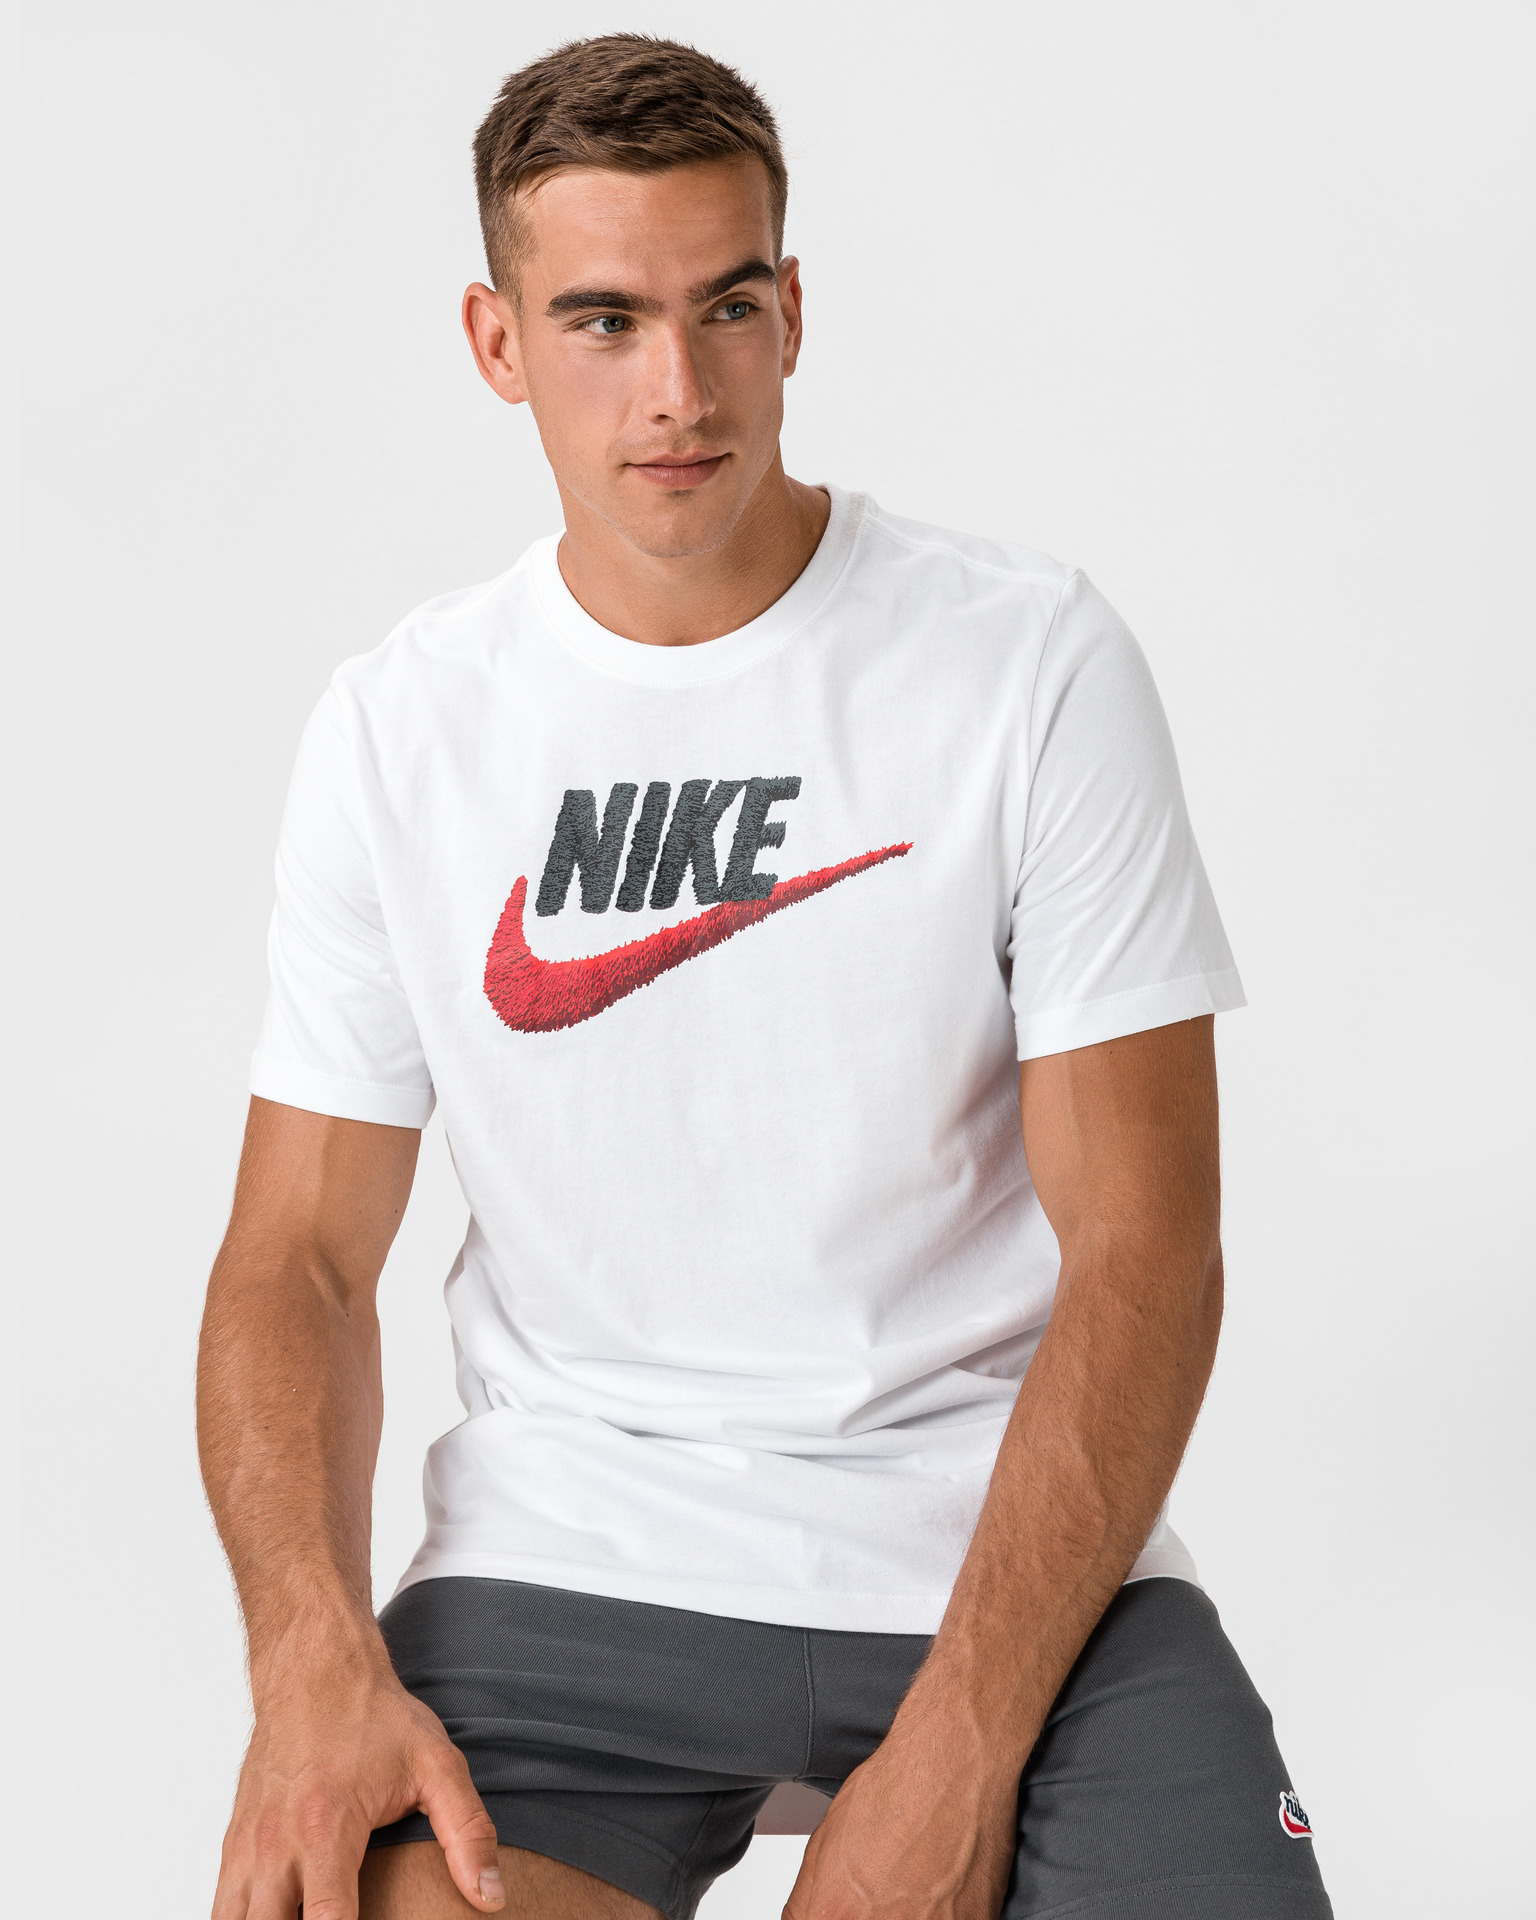 Nike - T-shirt Bibloo.com